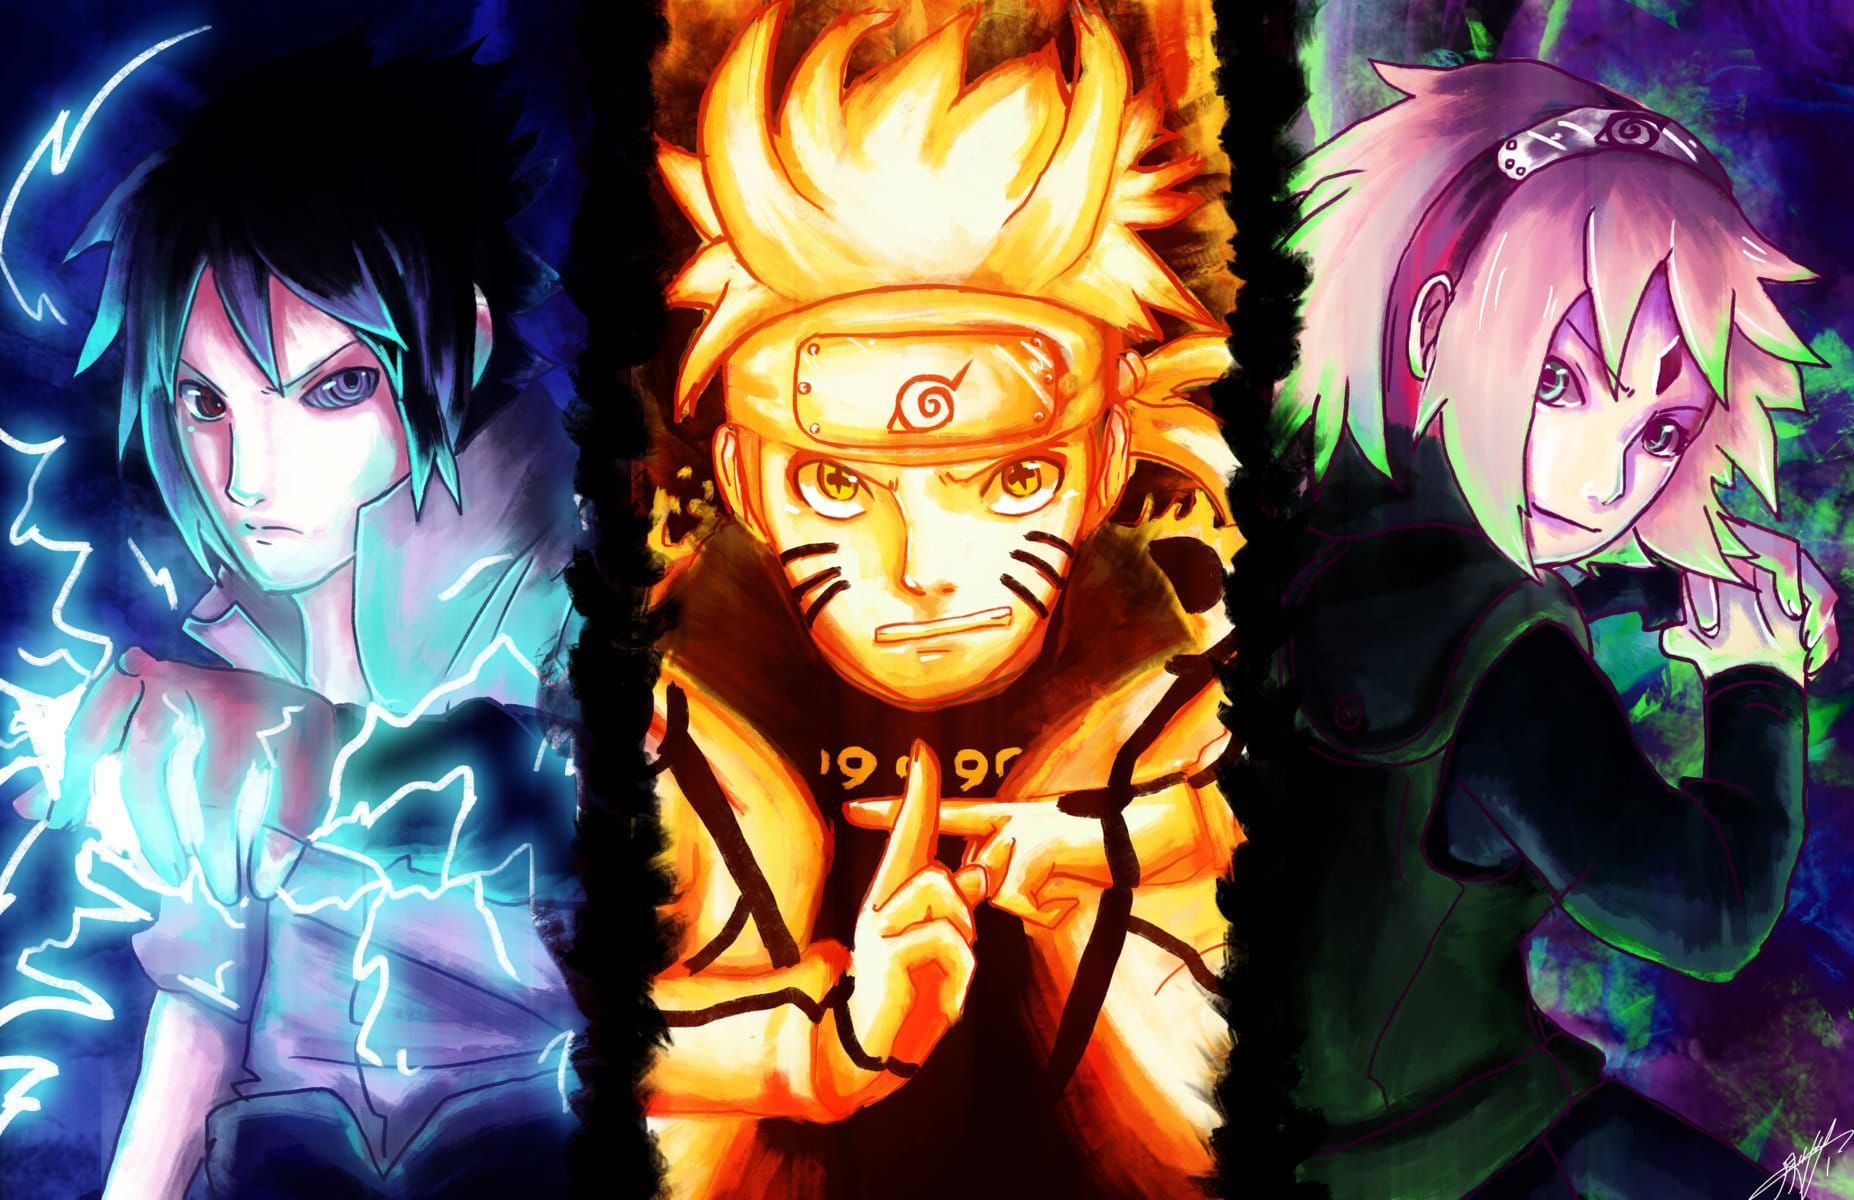 Game Naruto lục đạo sẽ mang lại cho bạn những trải nghiệm thú vị với các nhân vật quen thuộc và các kỹ năng ninja. Hãy tận hưởng cảm giác hồi hộp, đấu trí trong từng trận đấu.